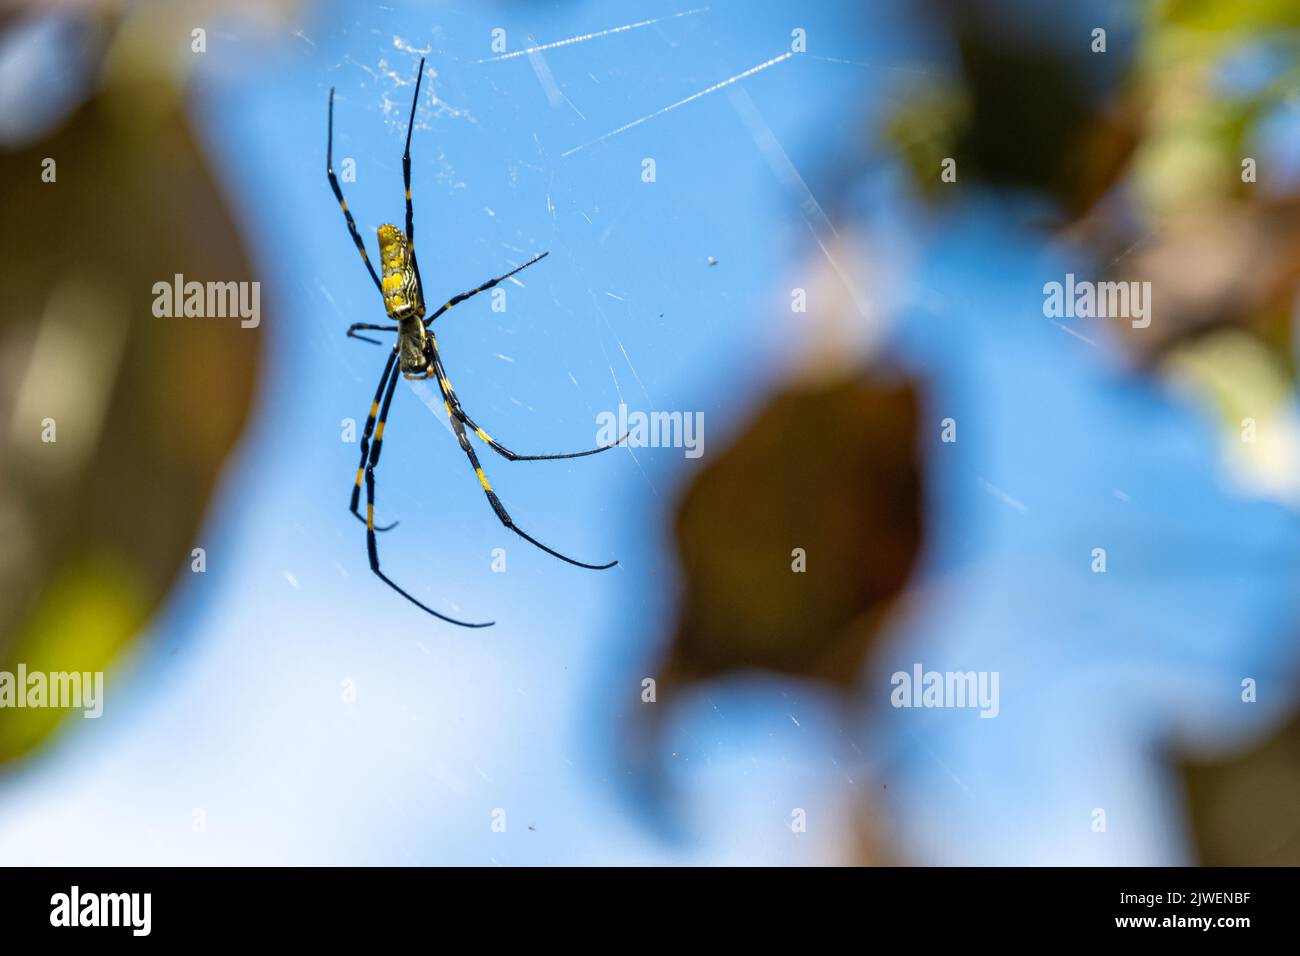 L'araignée Joro (Trichonila clavata), une espèce envahissante d'Asie qui se trouve maintenant en Géorgie et en Caroline du Sud aux États-Unis, sur son vaste réseau. Banque D'Images